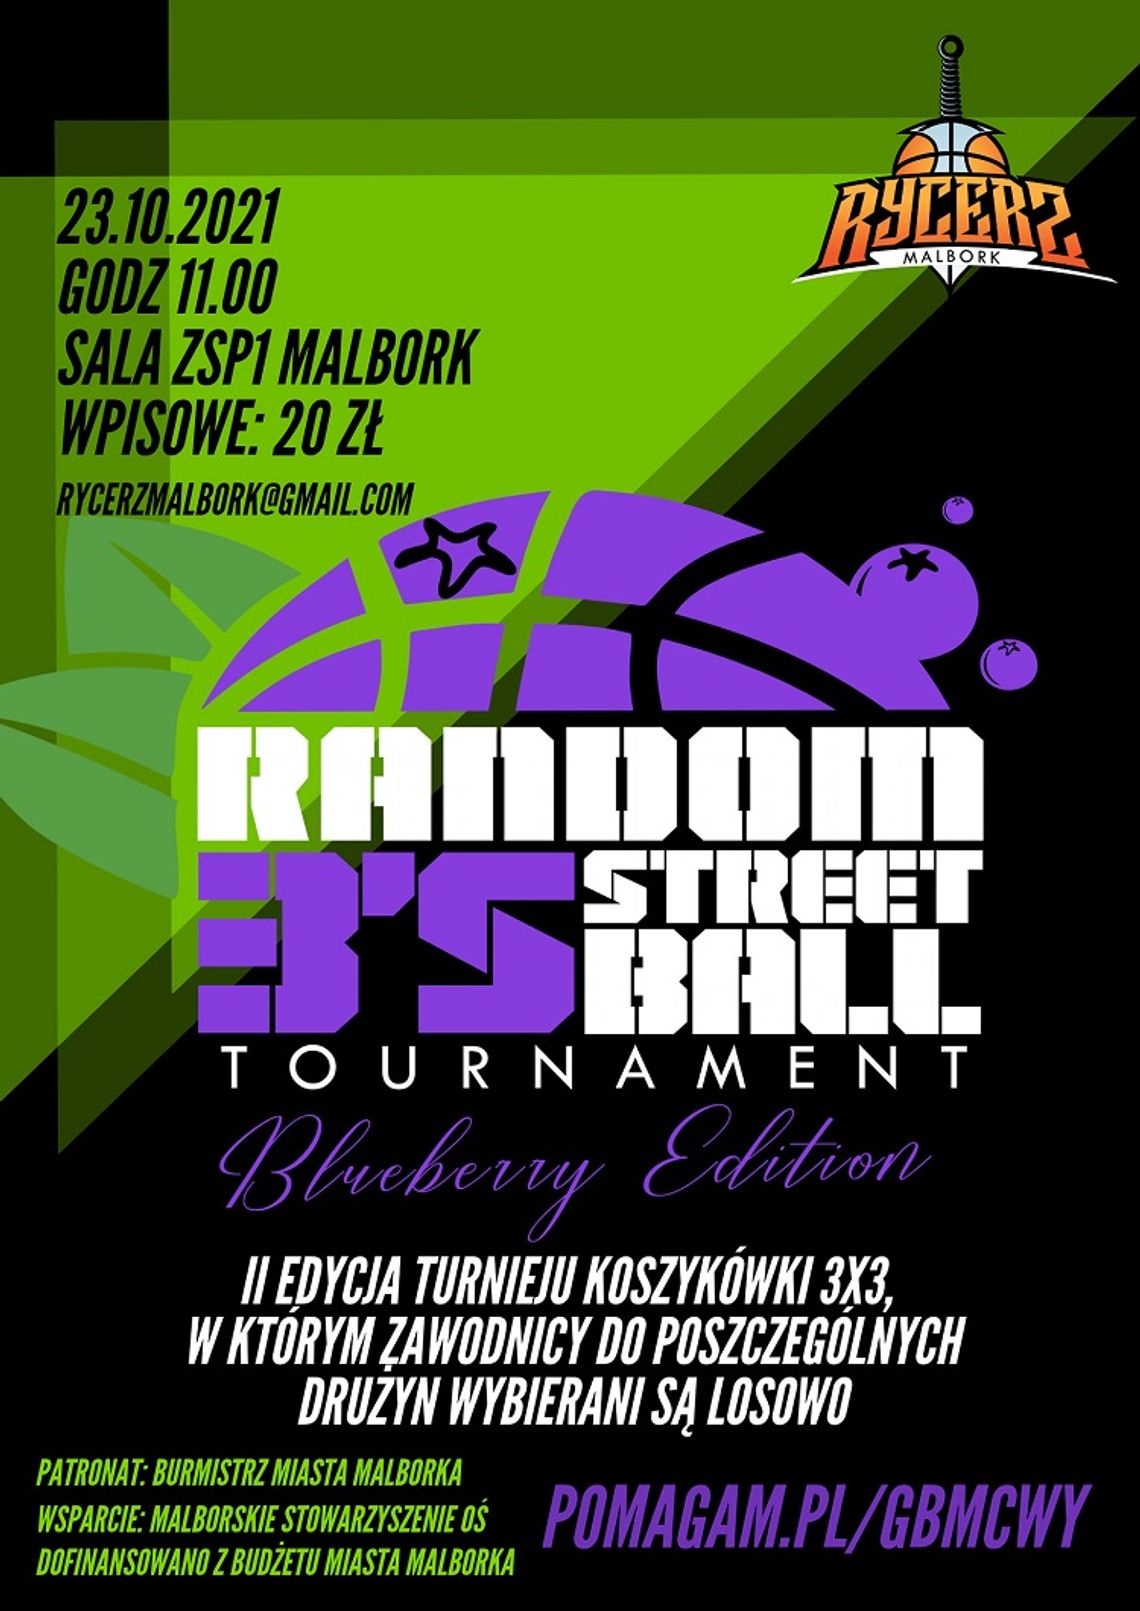 Malbork. II edycja turnieju koszykówki 3x3 RANDOM 3's STREETBALL TOURNAMENT w szczytnym celu.